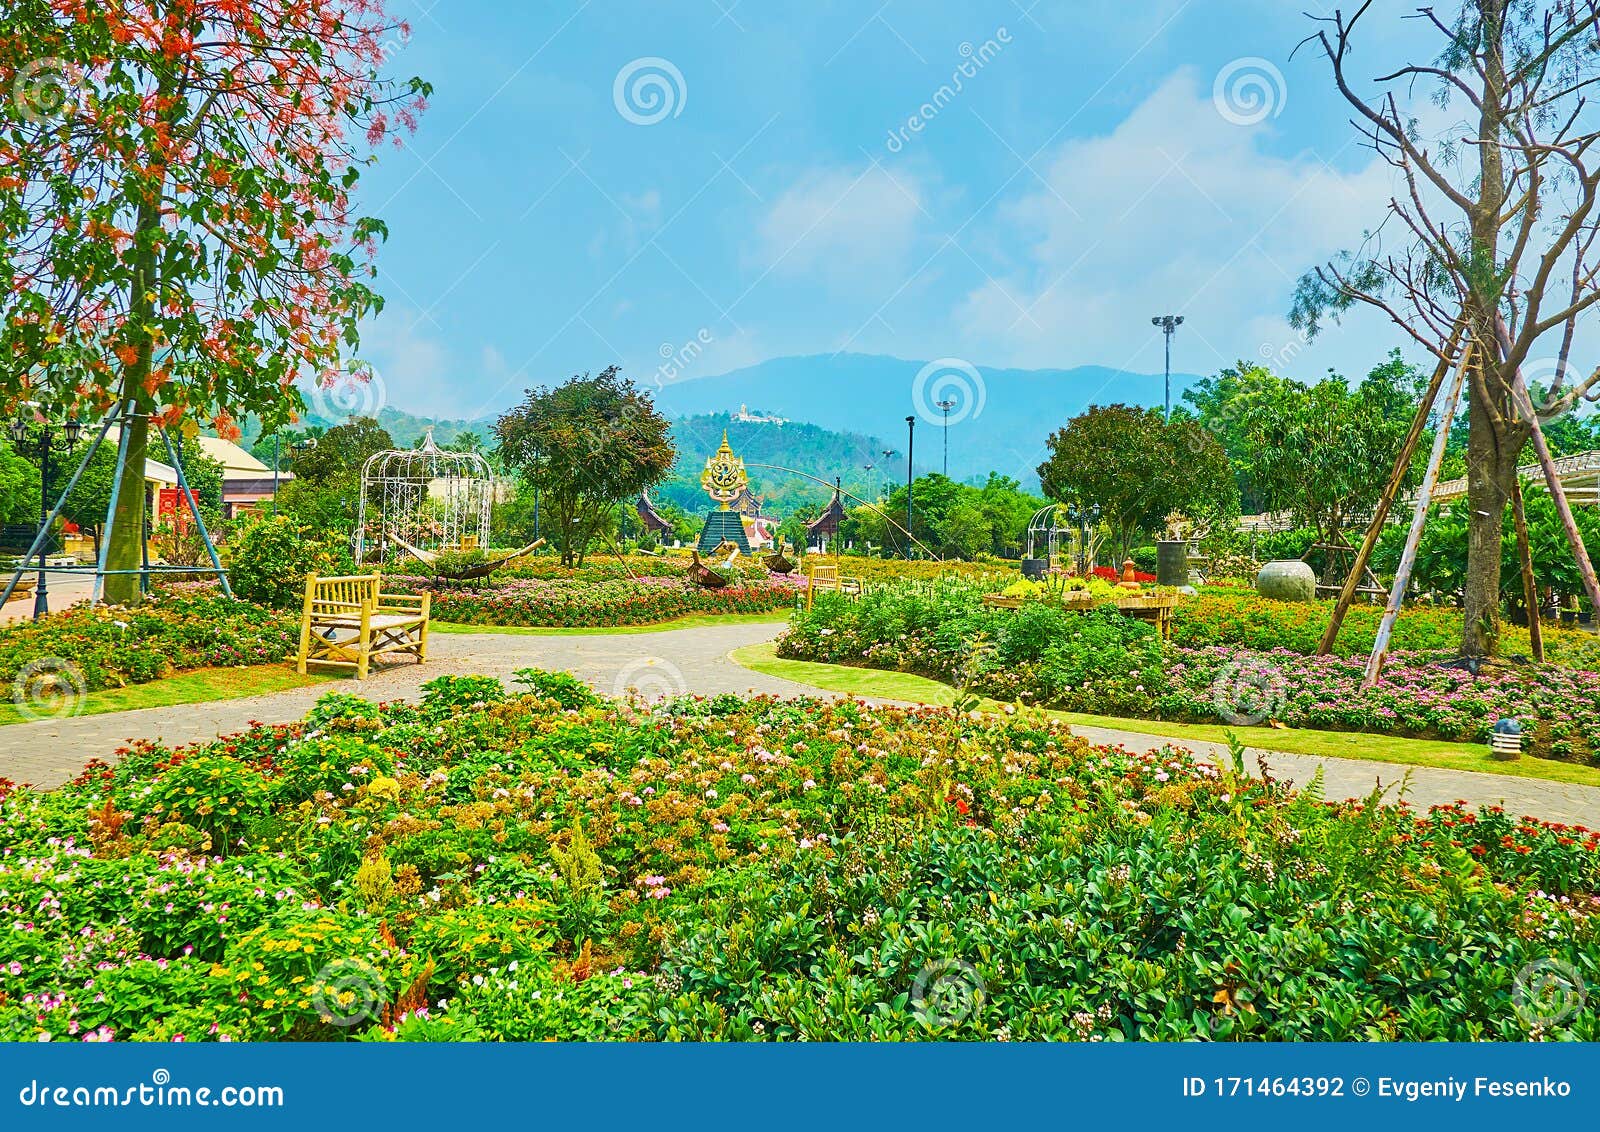 泰国清迈拉贾普鲁克皇家公园花坛图库摄影片 图片包括有泰国清迈拉贾普鲁克皇家公园花坛